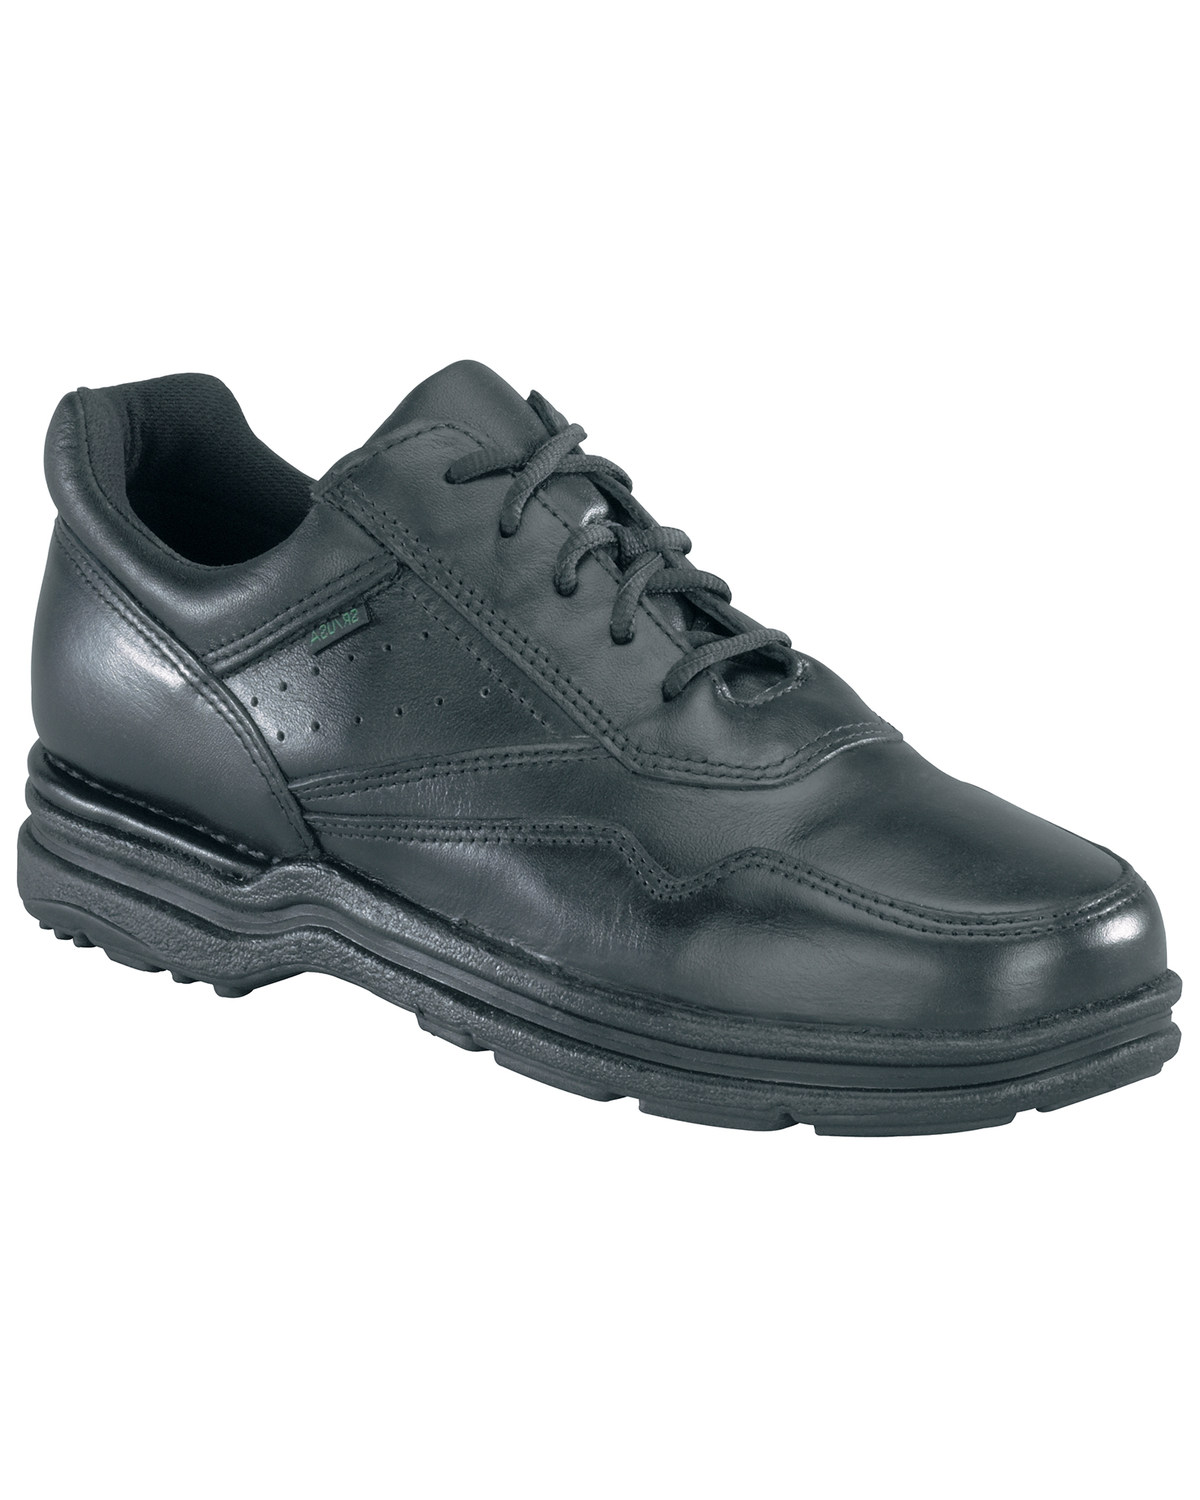 Rockport Men's Pro Walker Athletic Oxford Shoes - USPS Approved